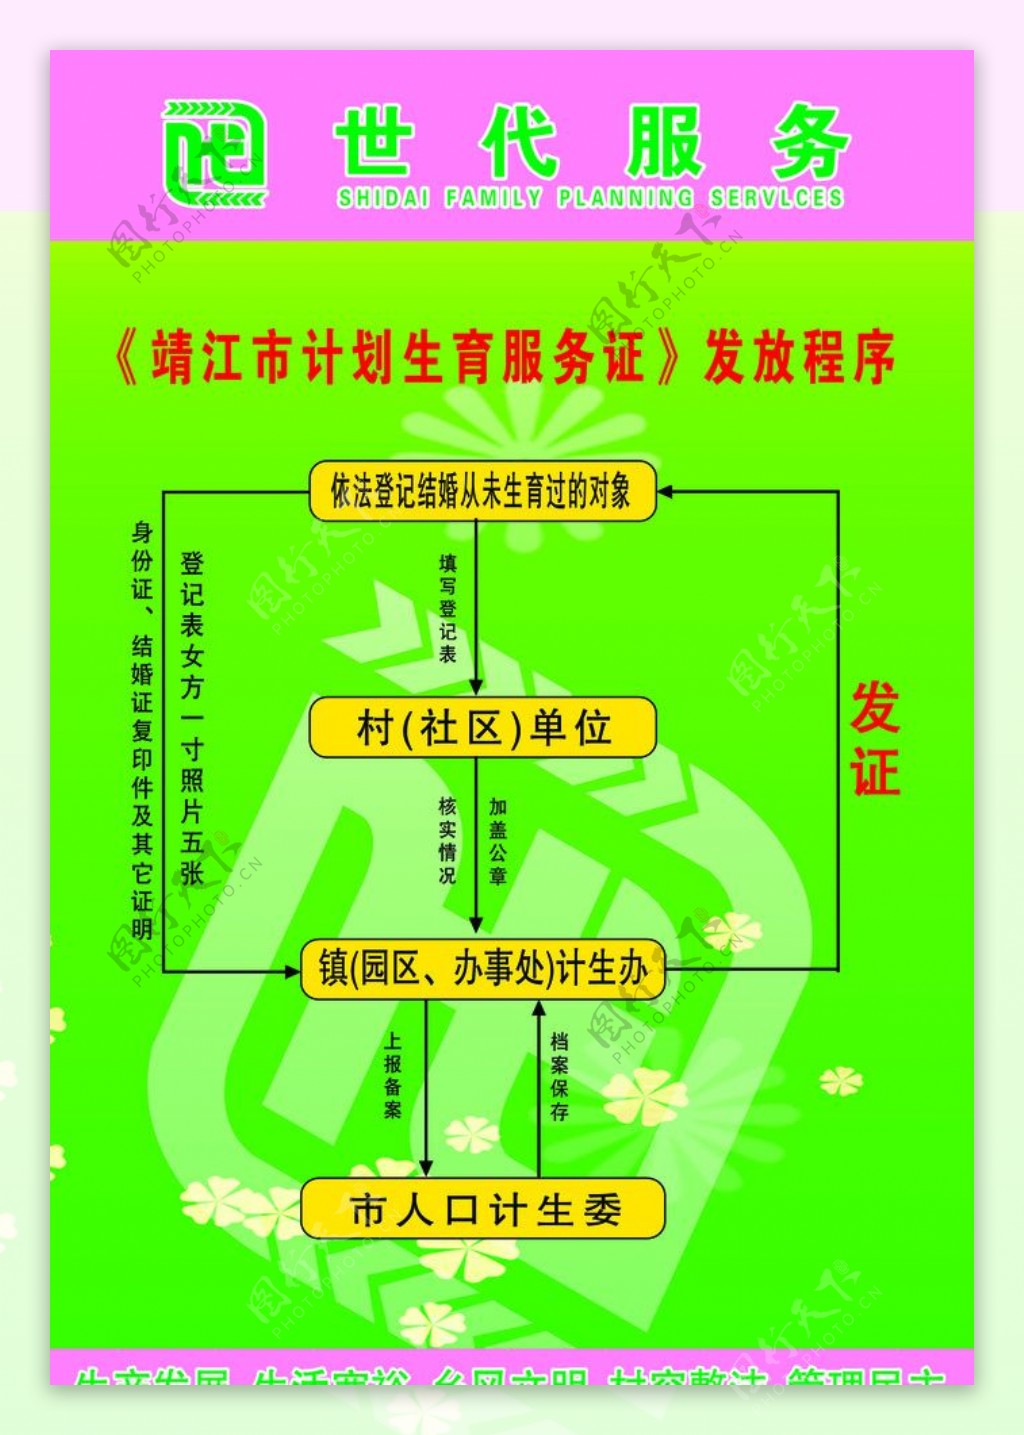 靖江市计划生育服务证发放程序图片